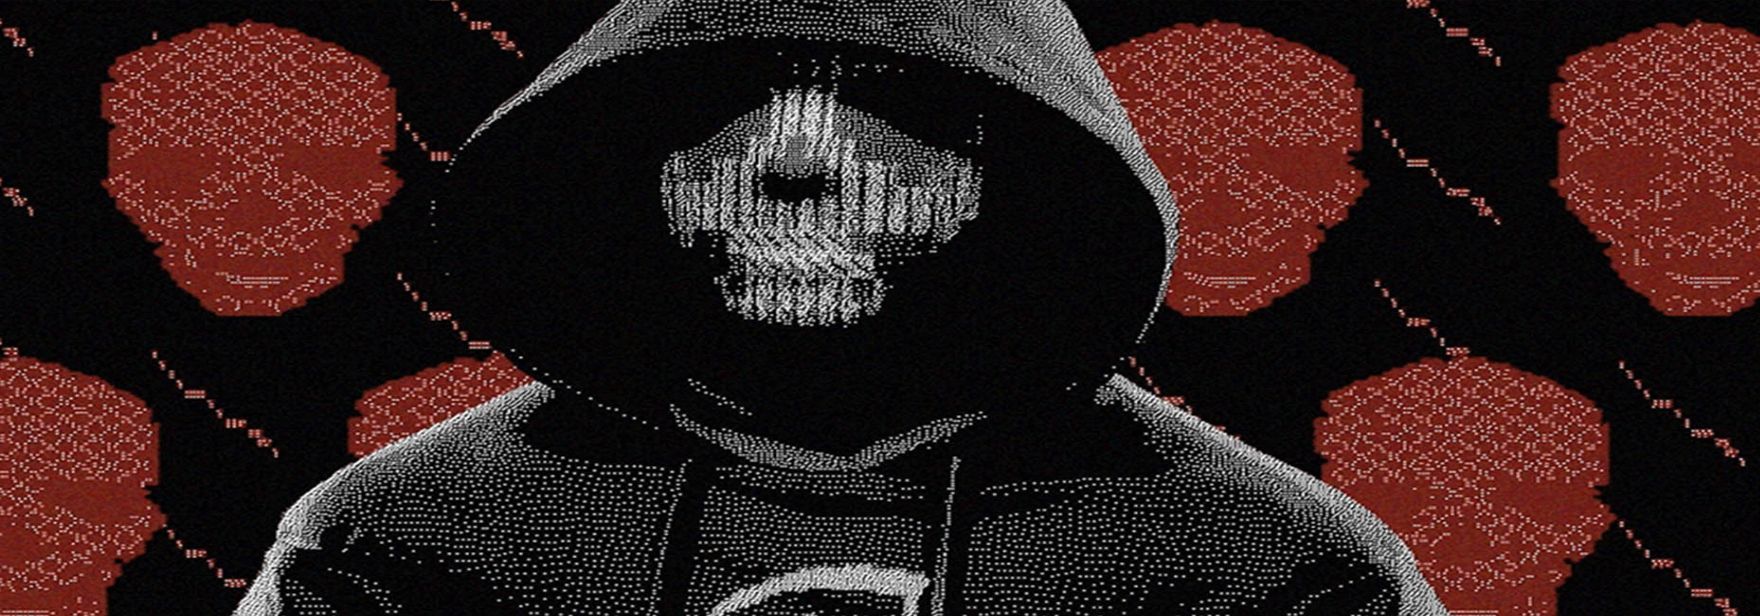 У хакерской группировки REvil появился преемник — BlackMatter. Новая банда ищет партнеров, которые продадут доступ к корпоративным сетям